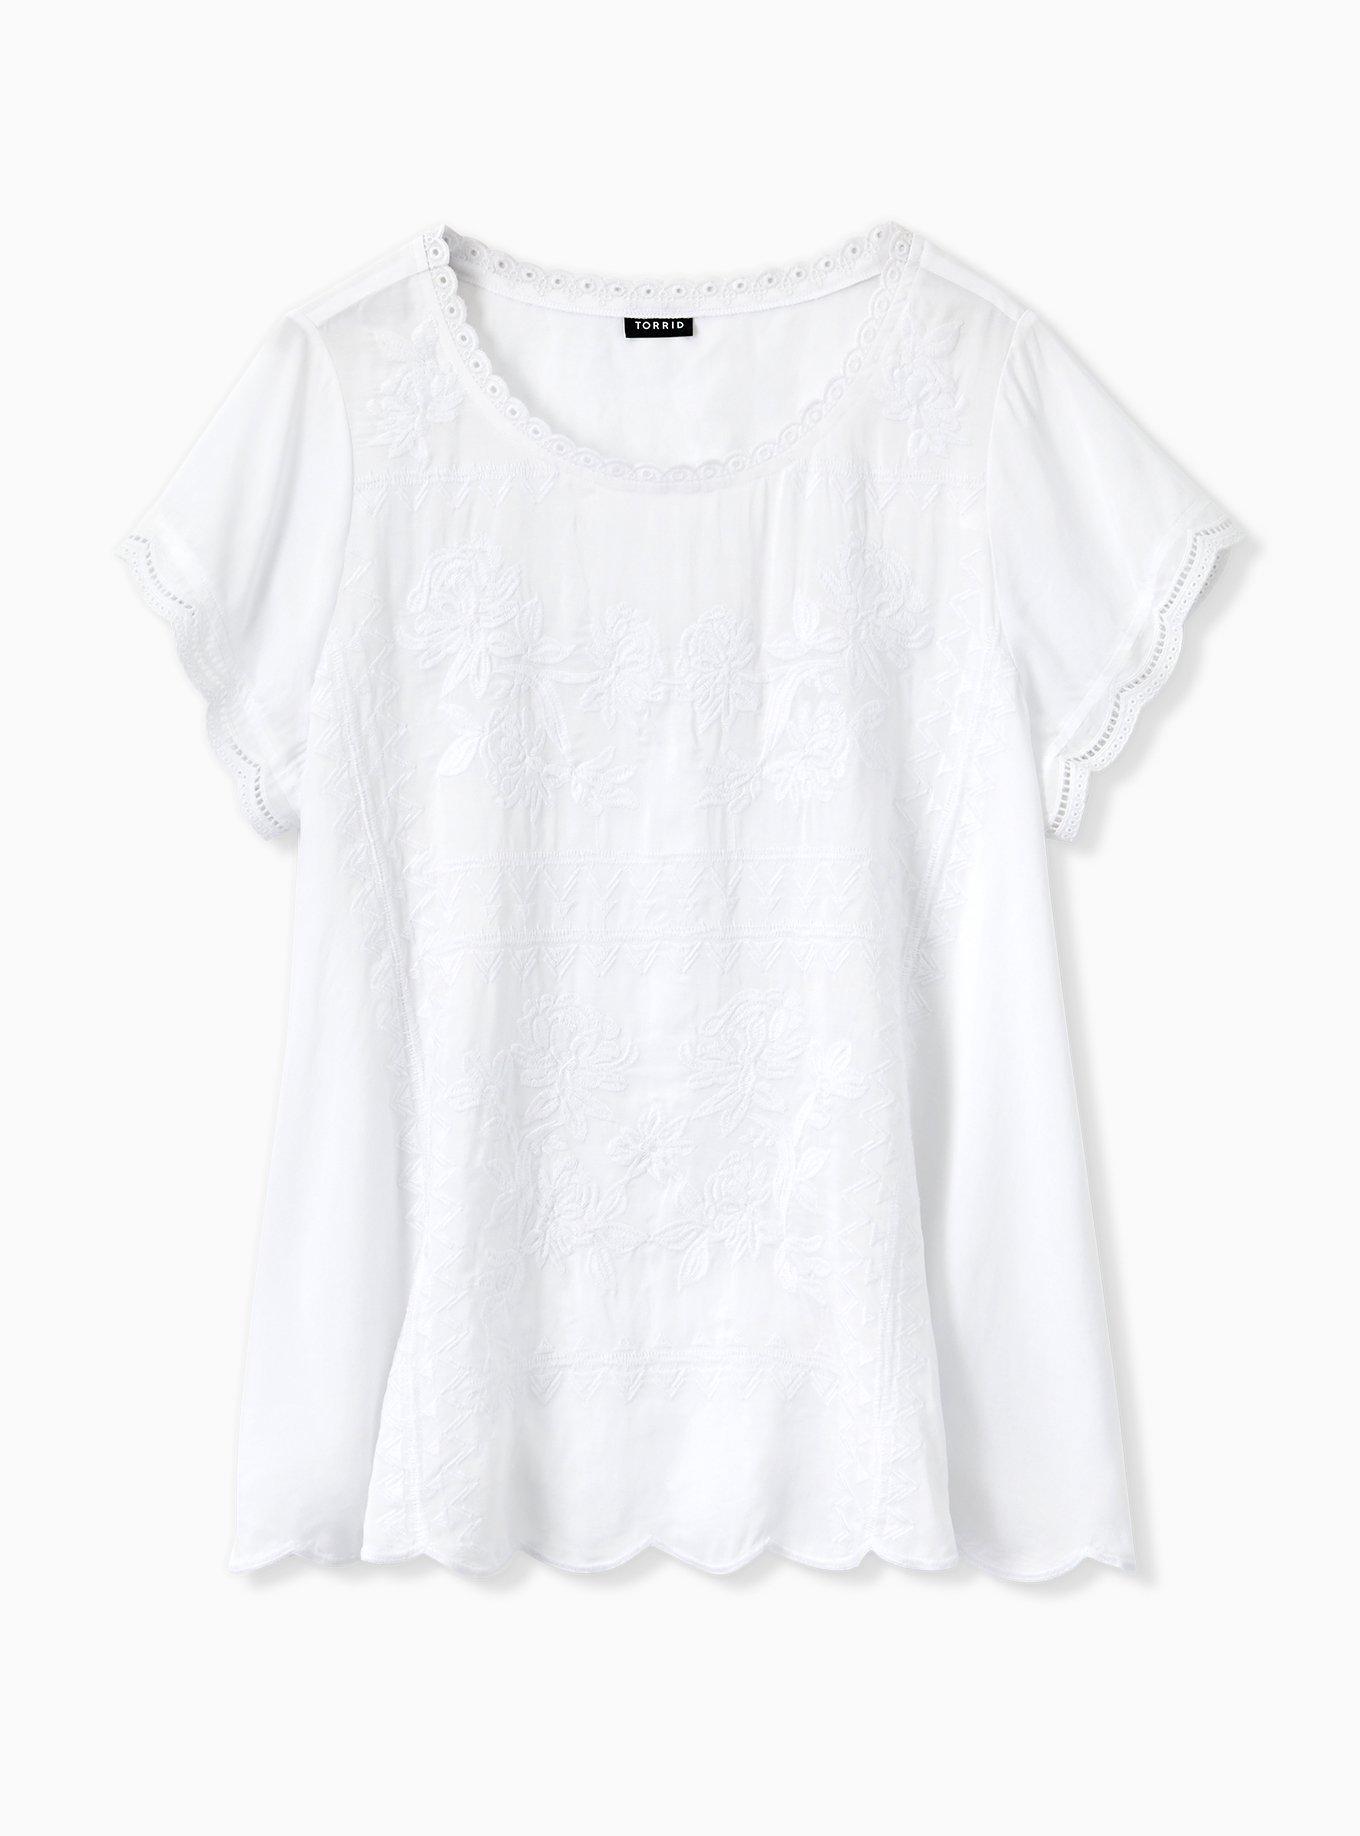 Plus Size - White Embroidered Challis Blouse - Torrid